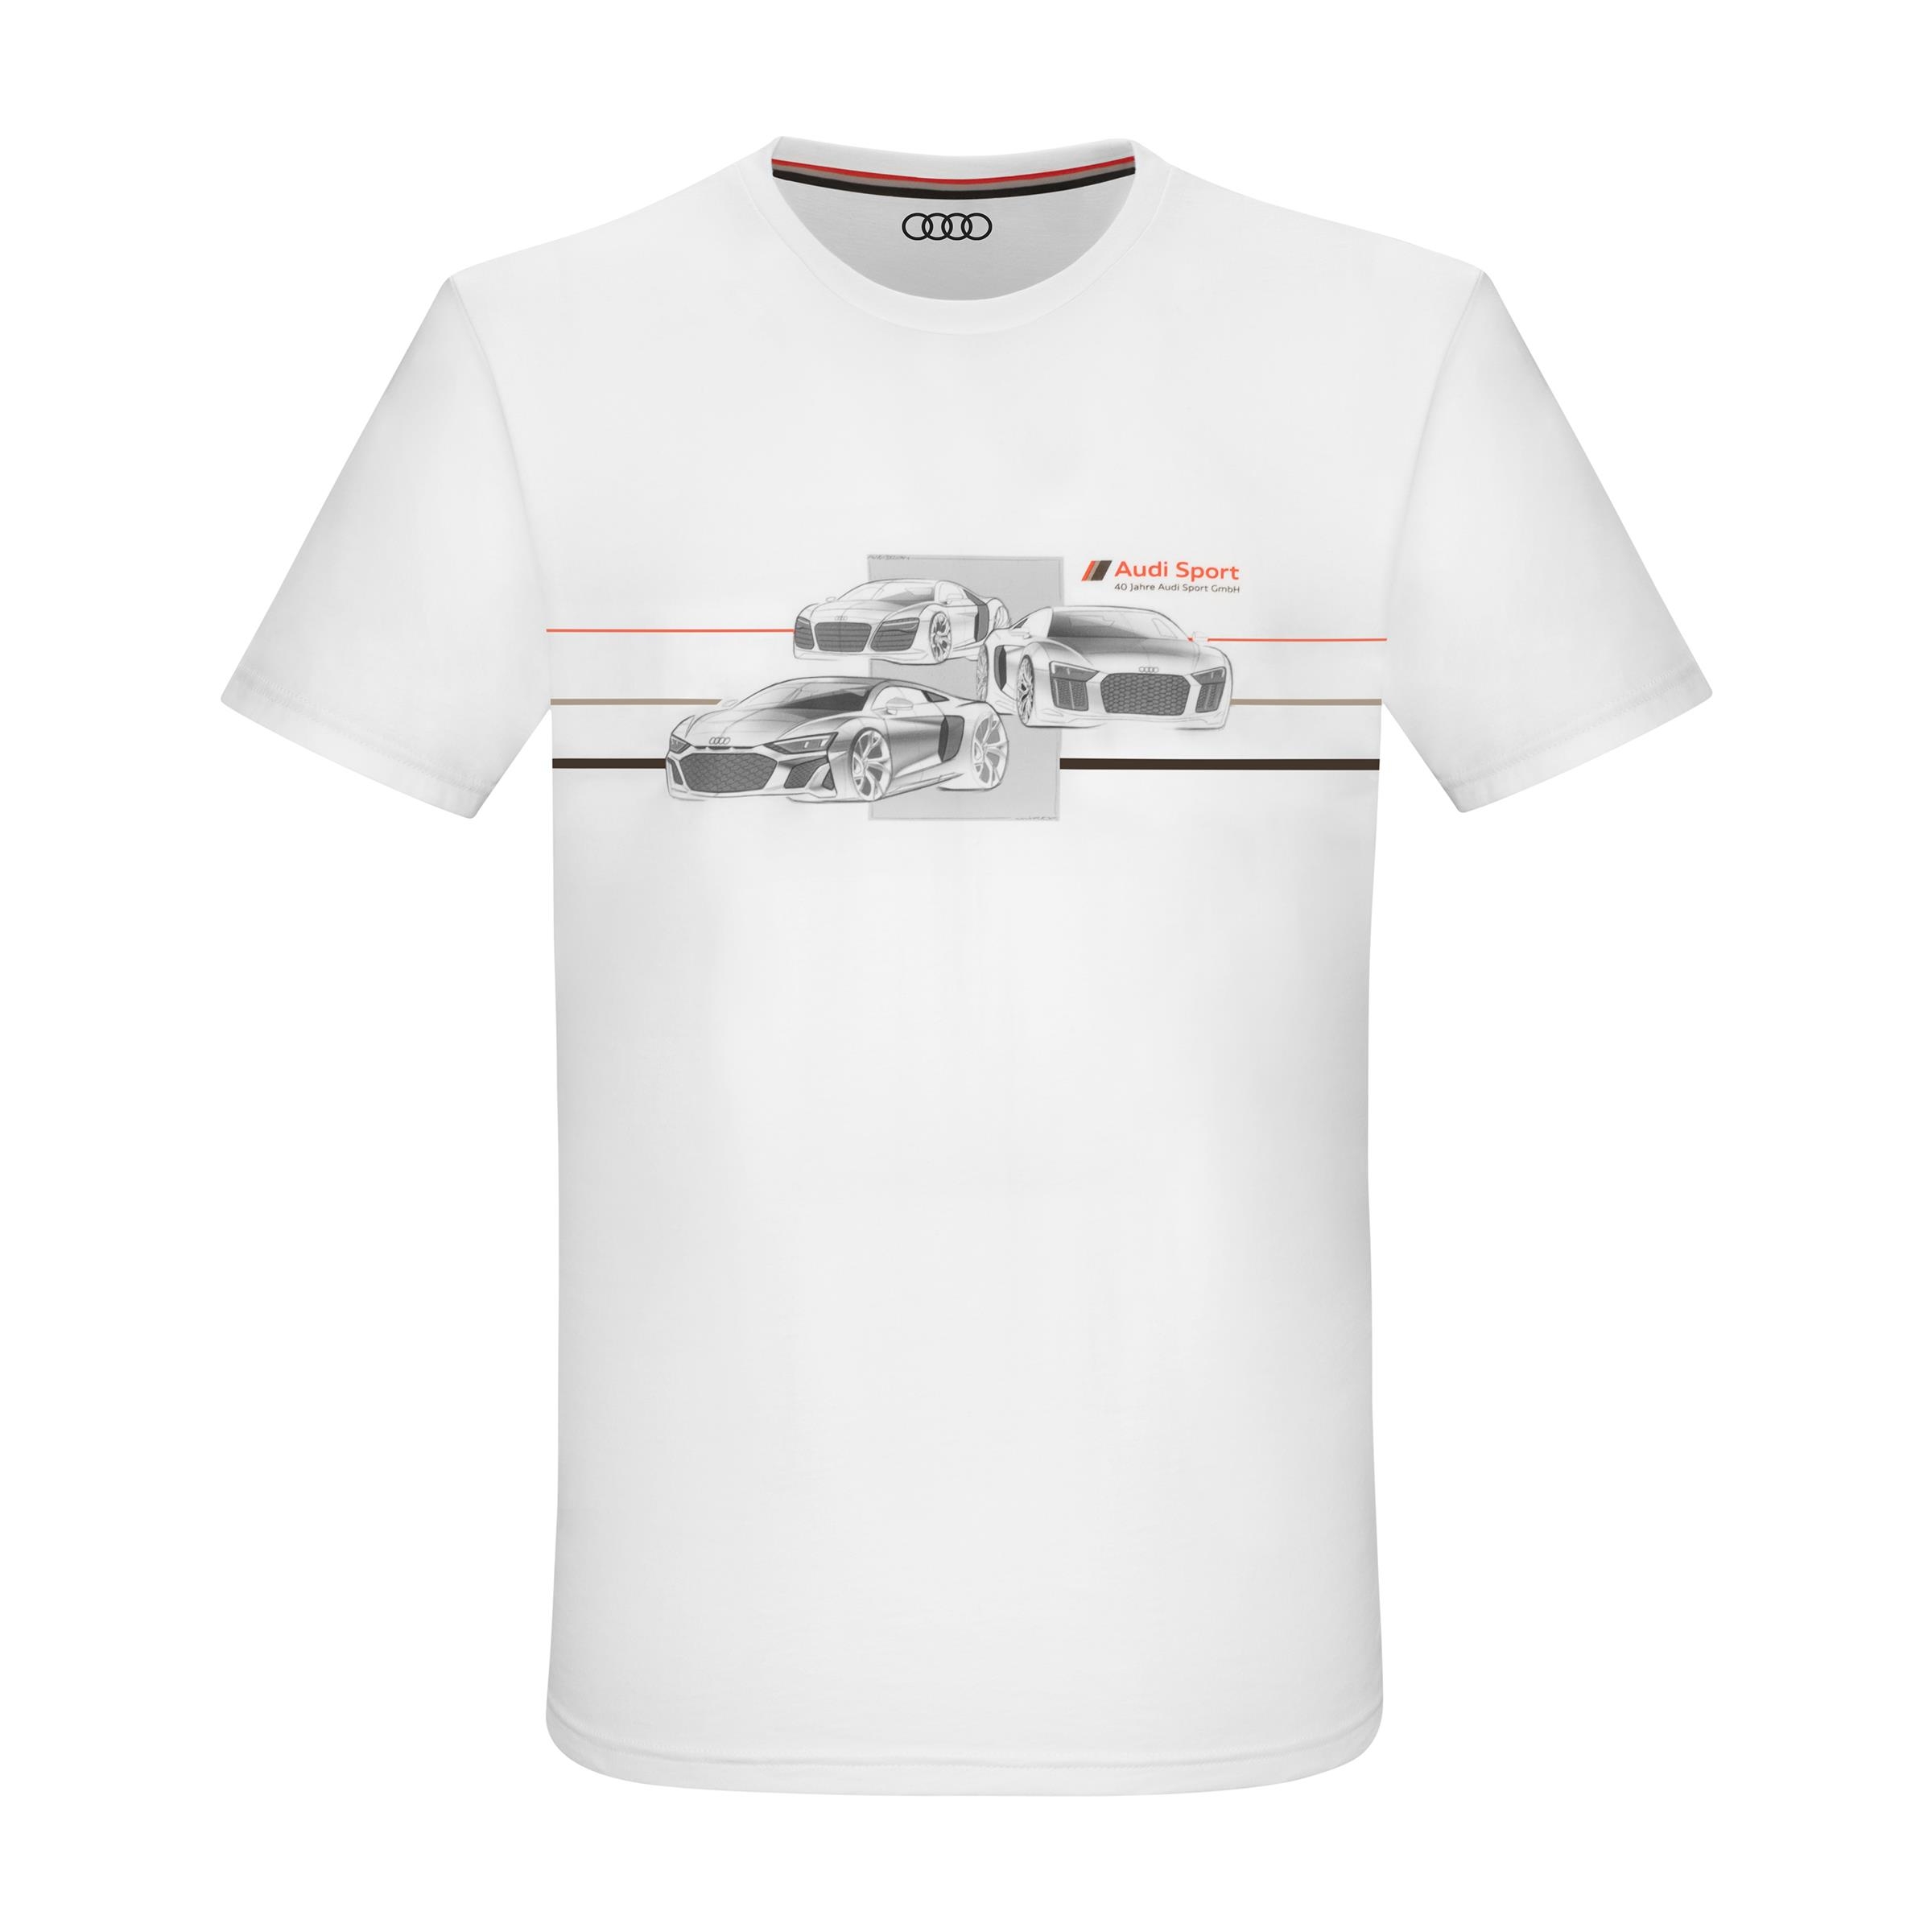  Audi Sport 40 Jahre Shirt, Herren, Weiß, Gr. XL